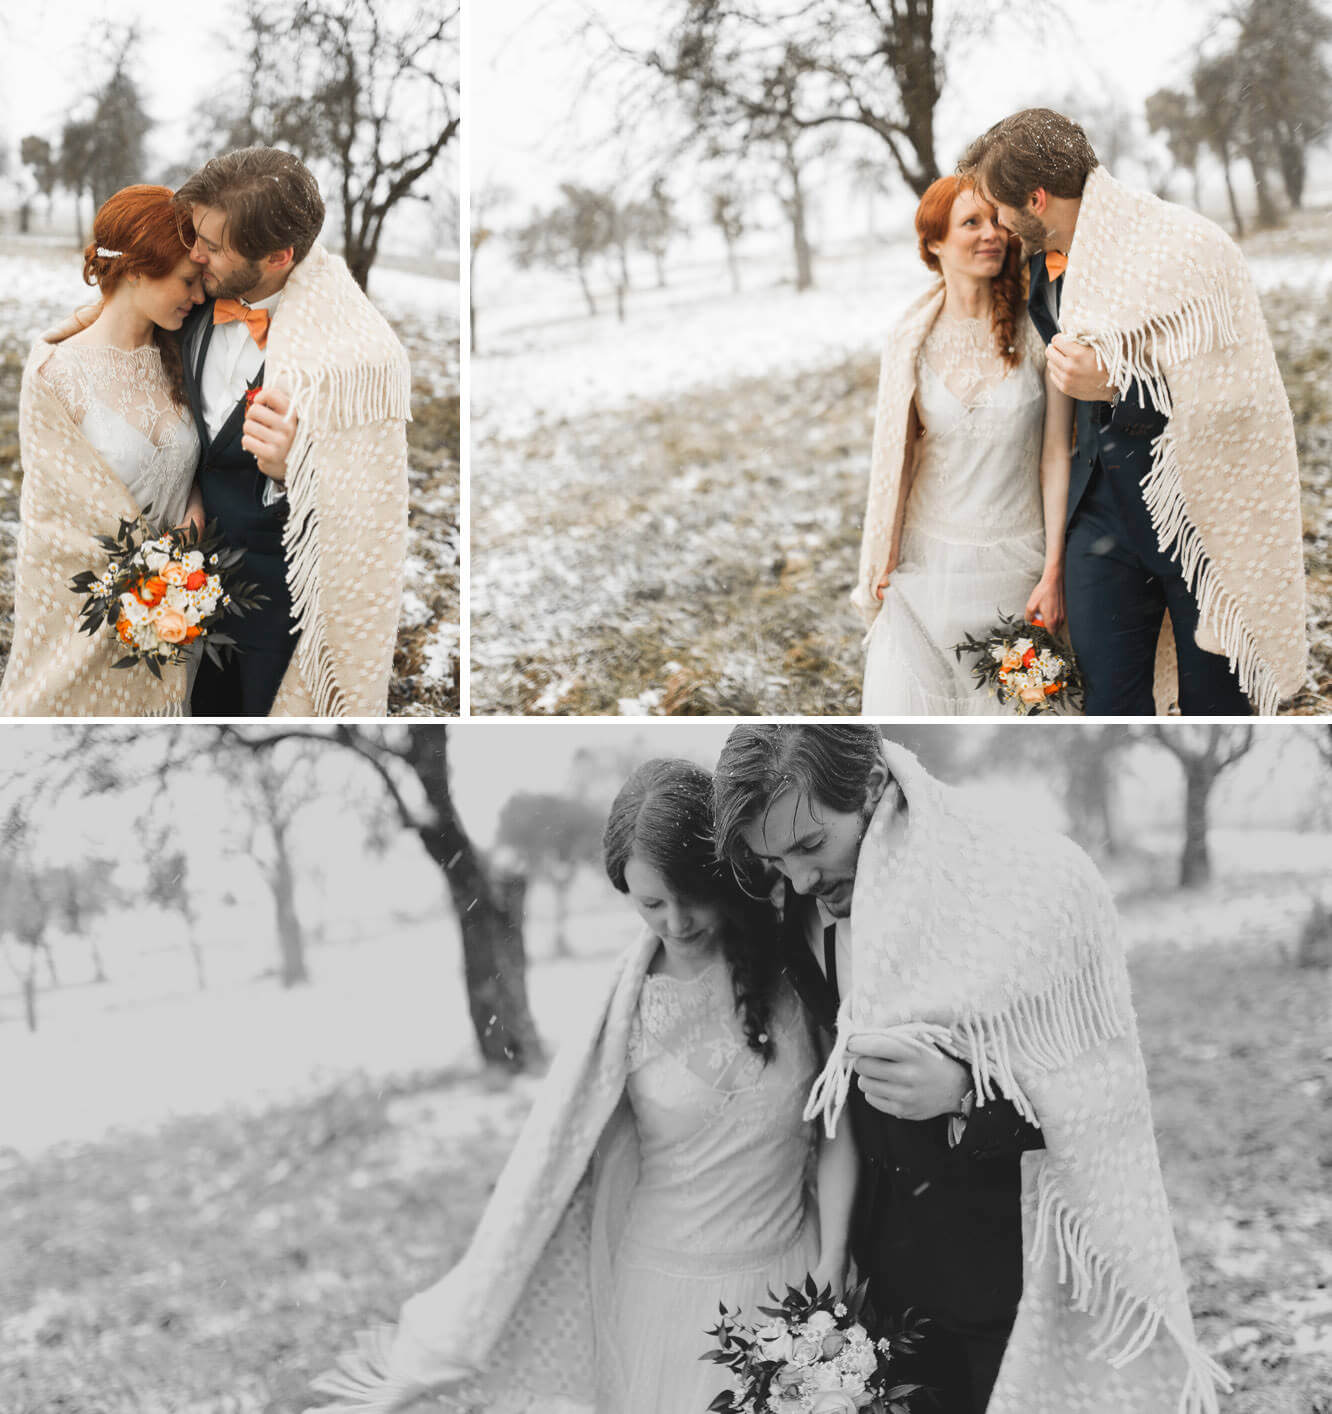 Brautpaar outdoor bei Schneefall bei deren Winterhochzeit zur white winter wedding auf Landgut Halsberg mit warmer Decke und dem Hochzeitskleid von Rembo Styling